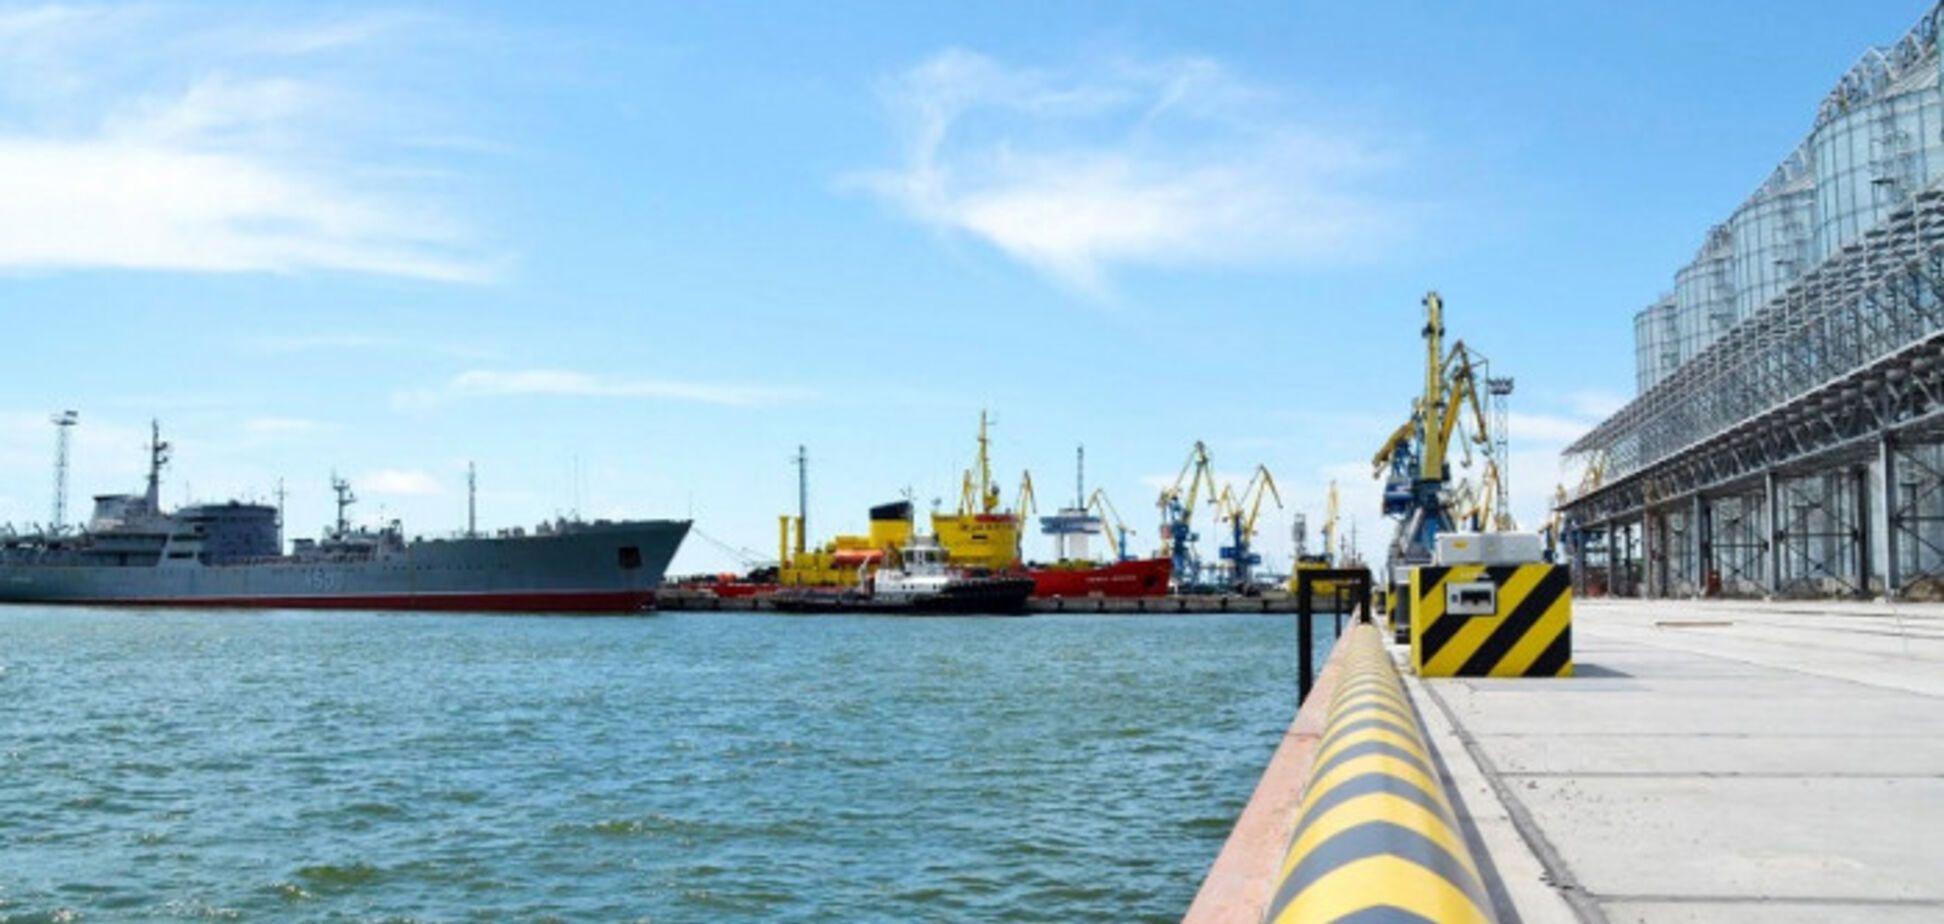 Для України важливо розблокувати морські порти та відновити обсяги промвиробництва, – Новак